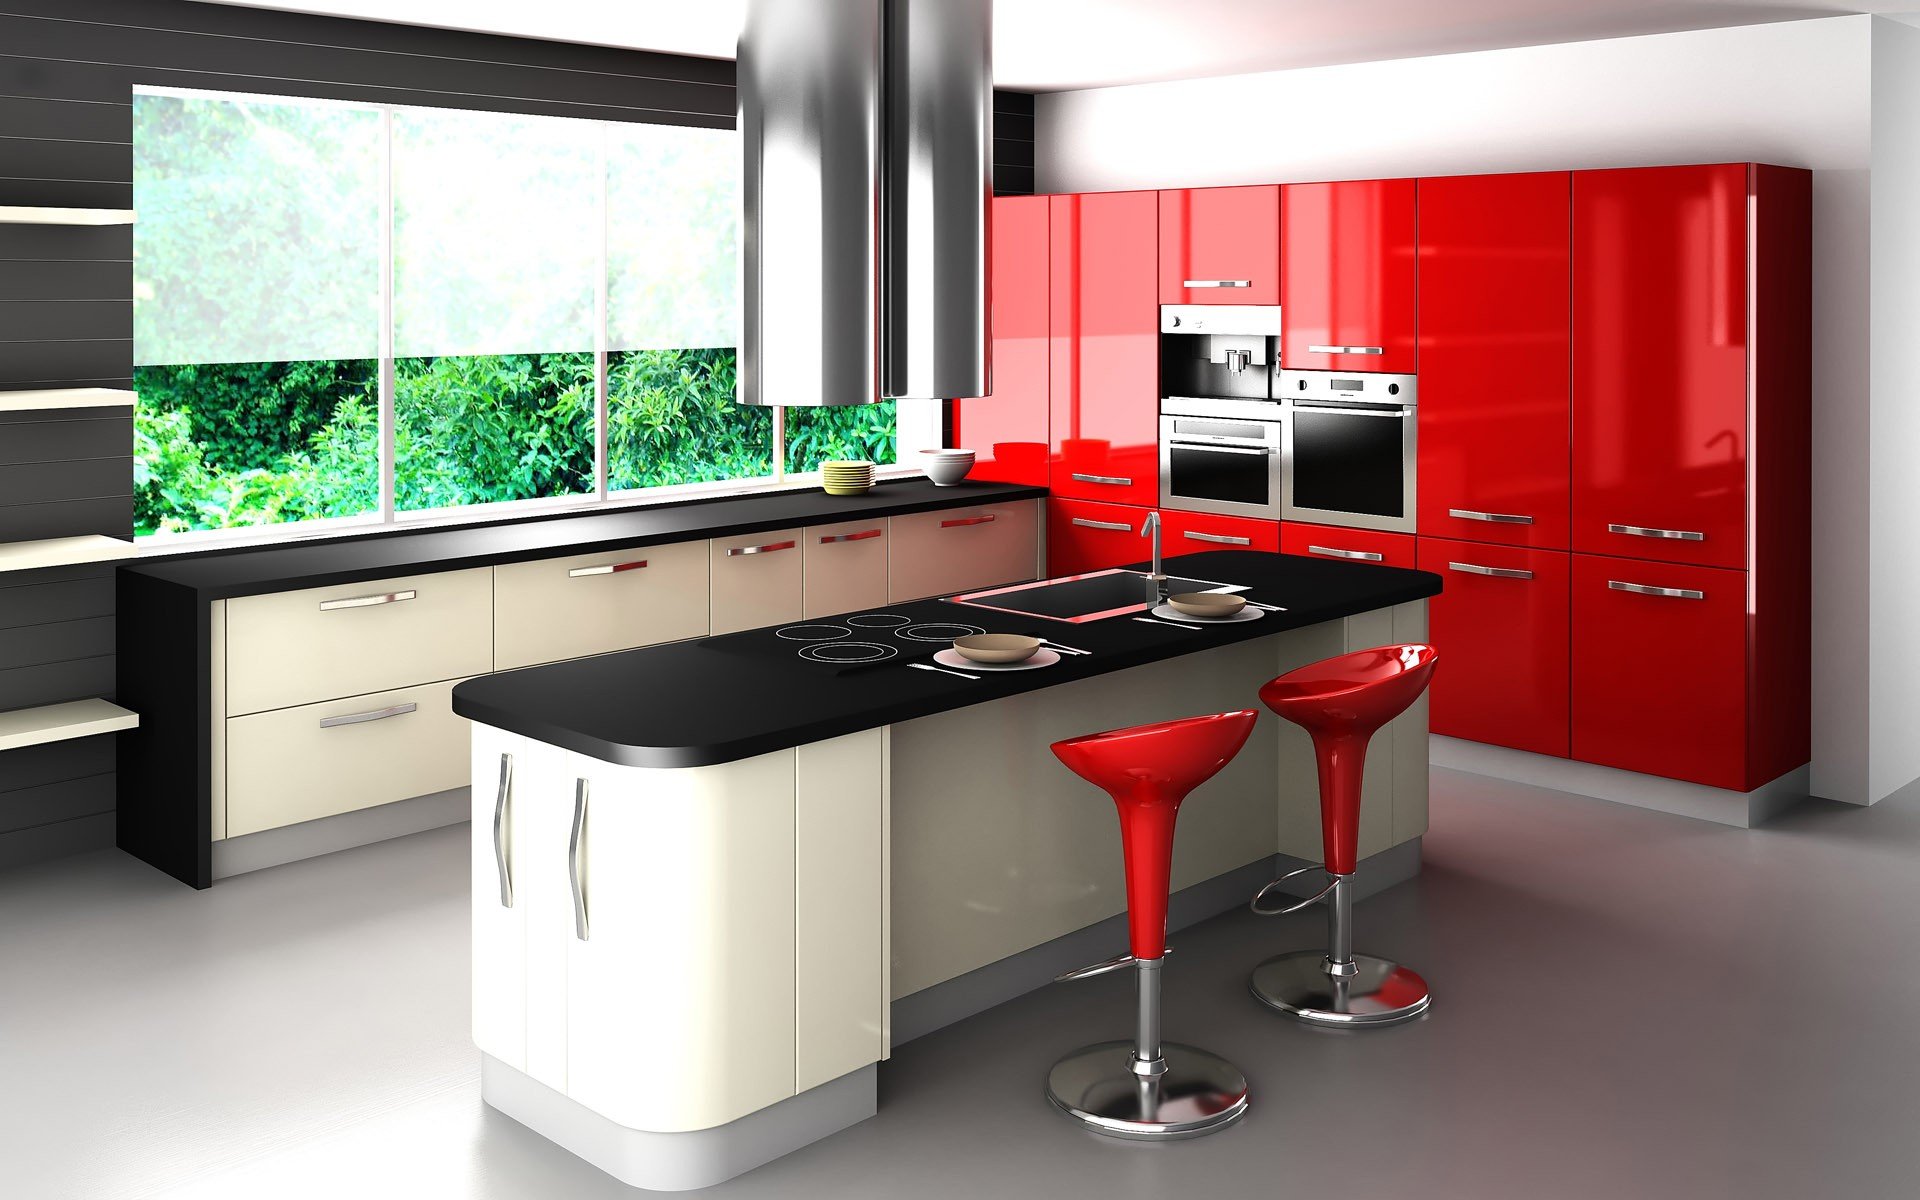 hd kitchen interior design